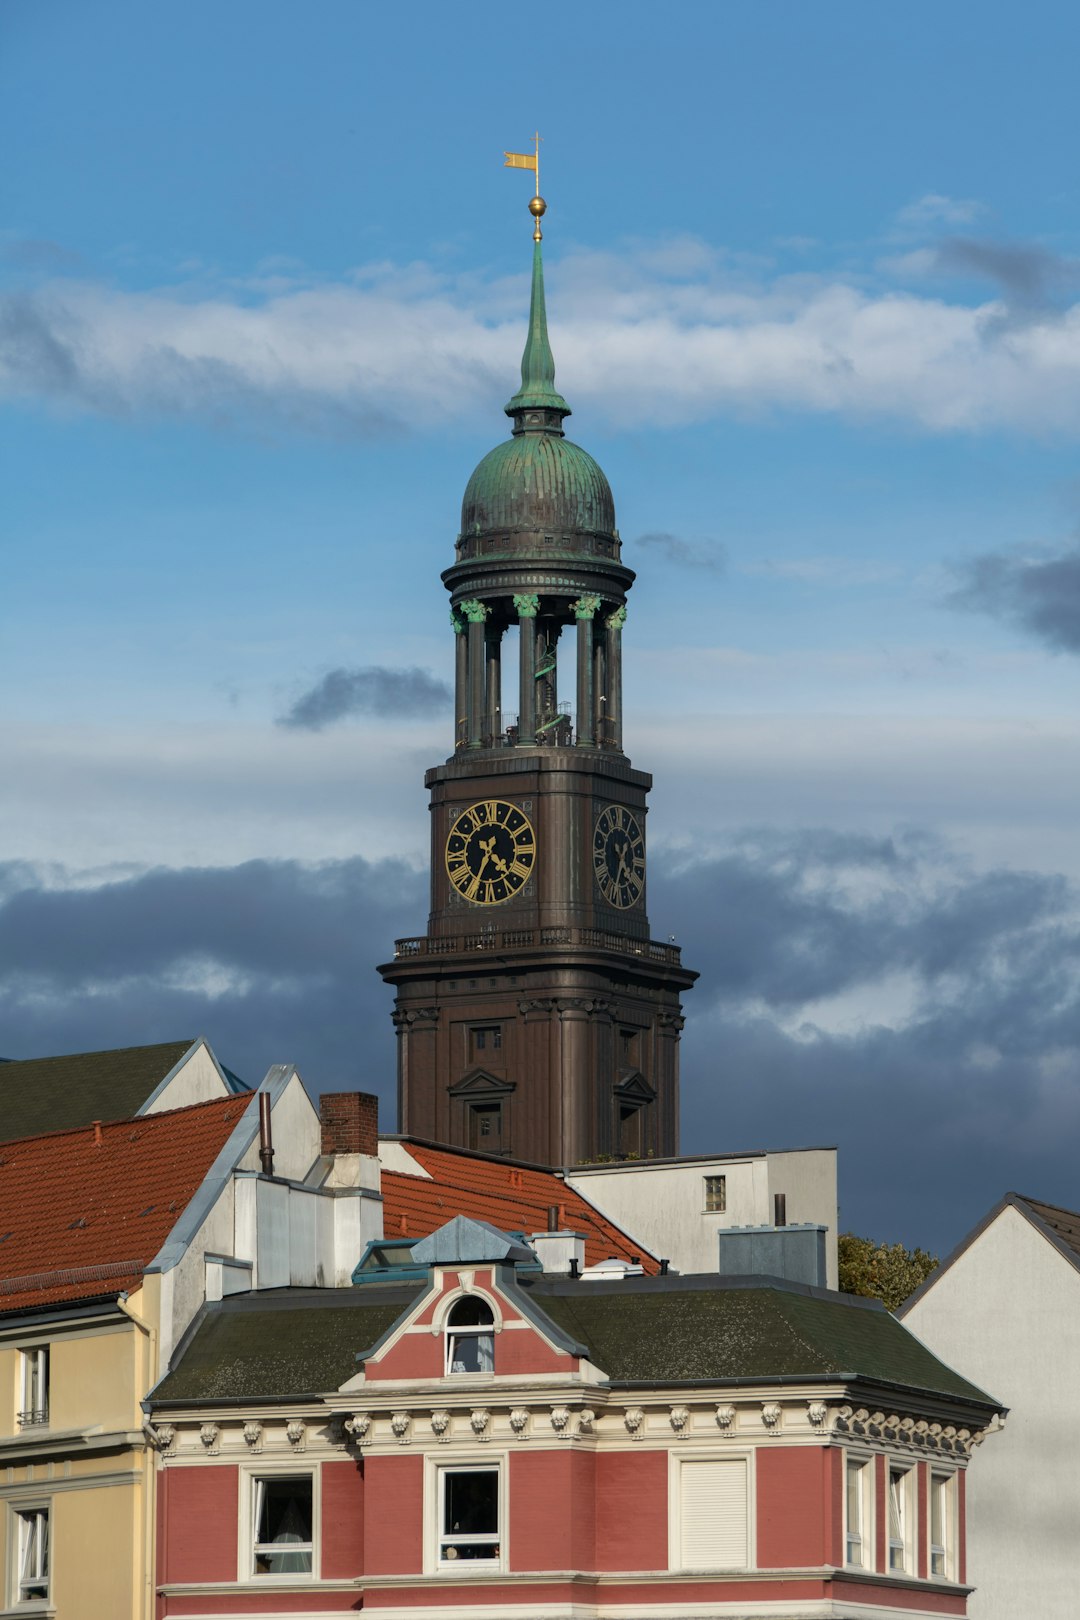 Landmark photo spot St. Michael's Church Heinrich-Hertz-Turm